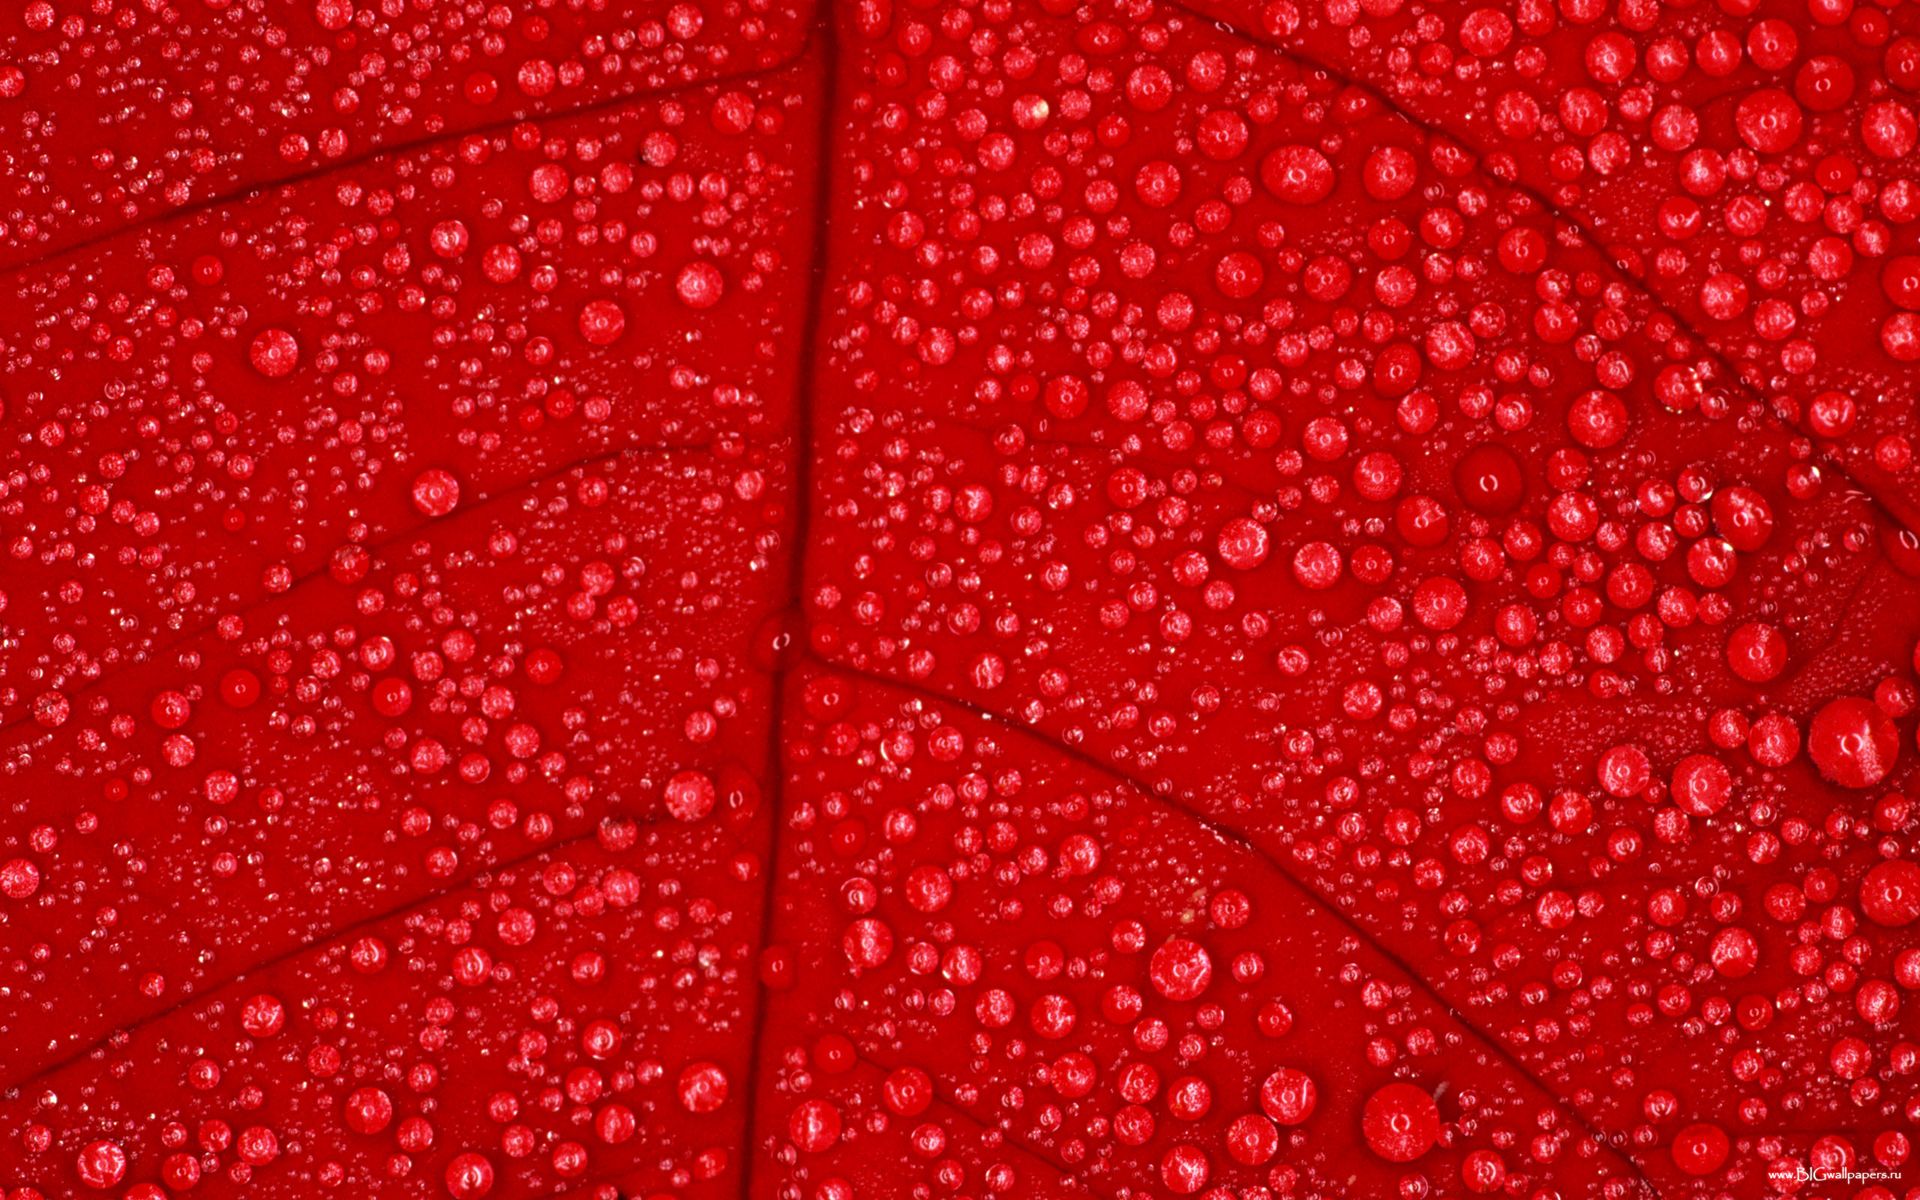 капли воды на красном листе, красный лист дерева, water drops texture, текстура